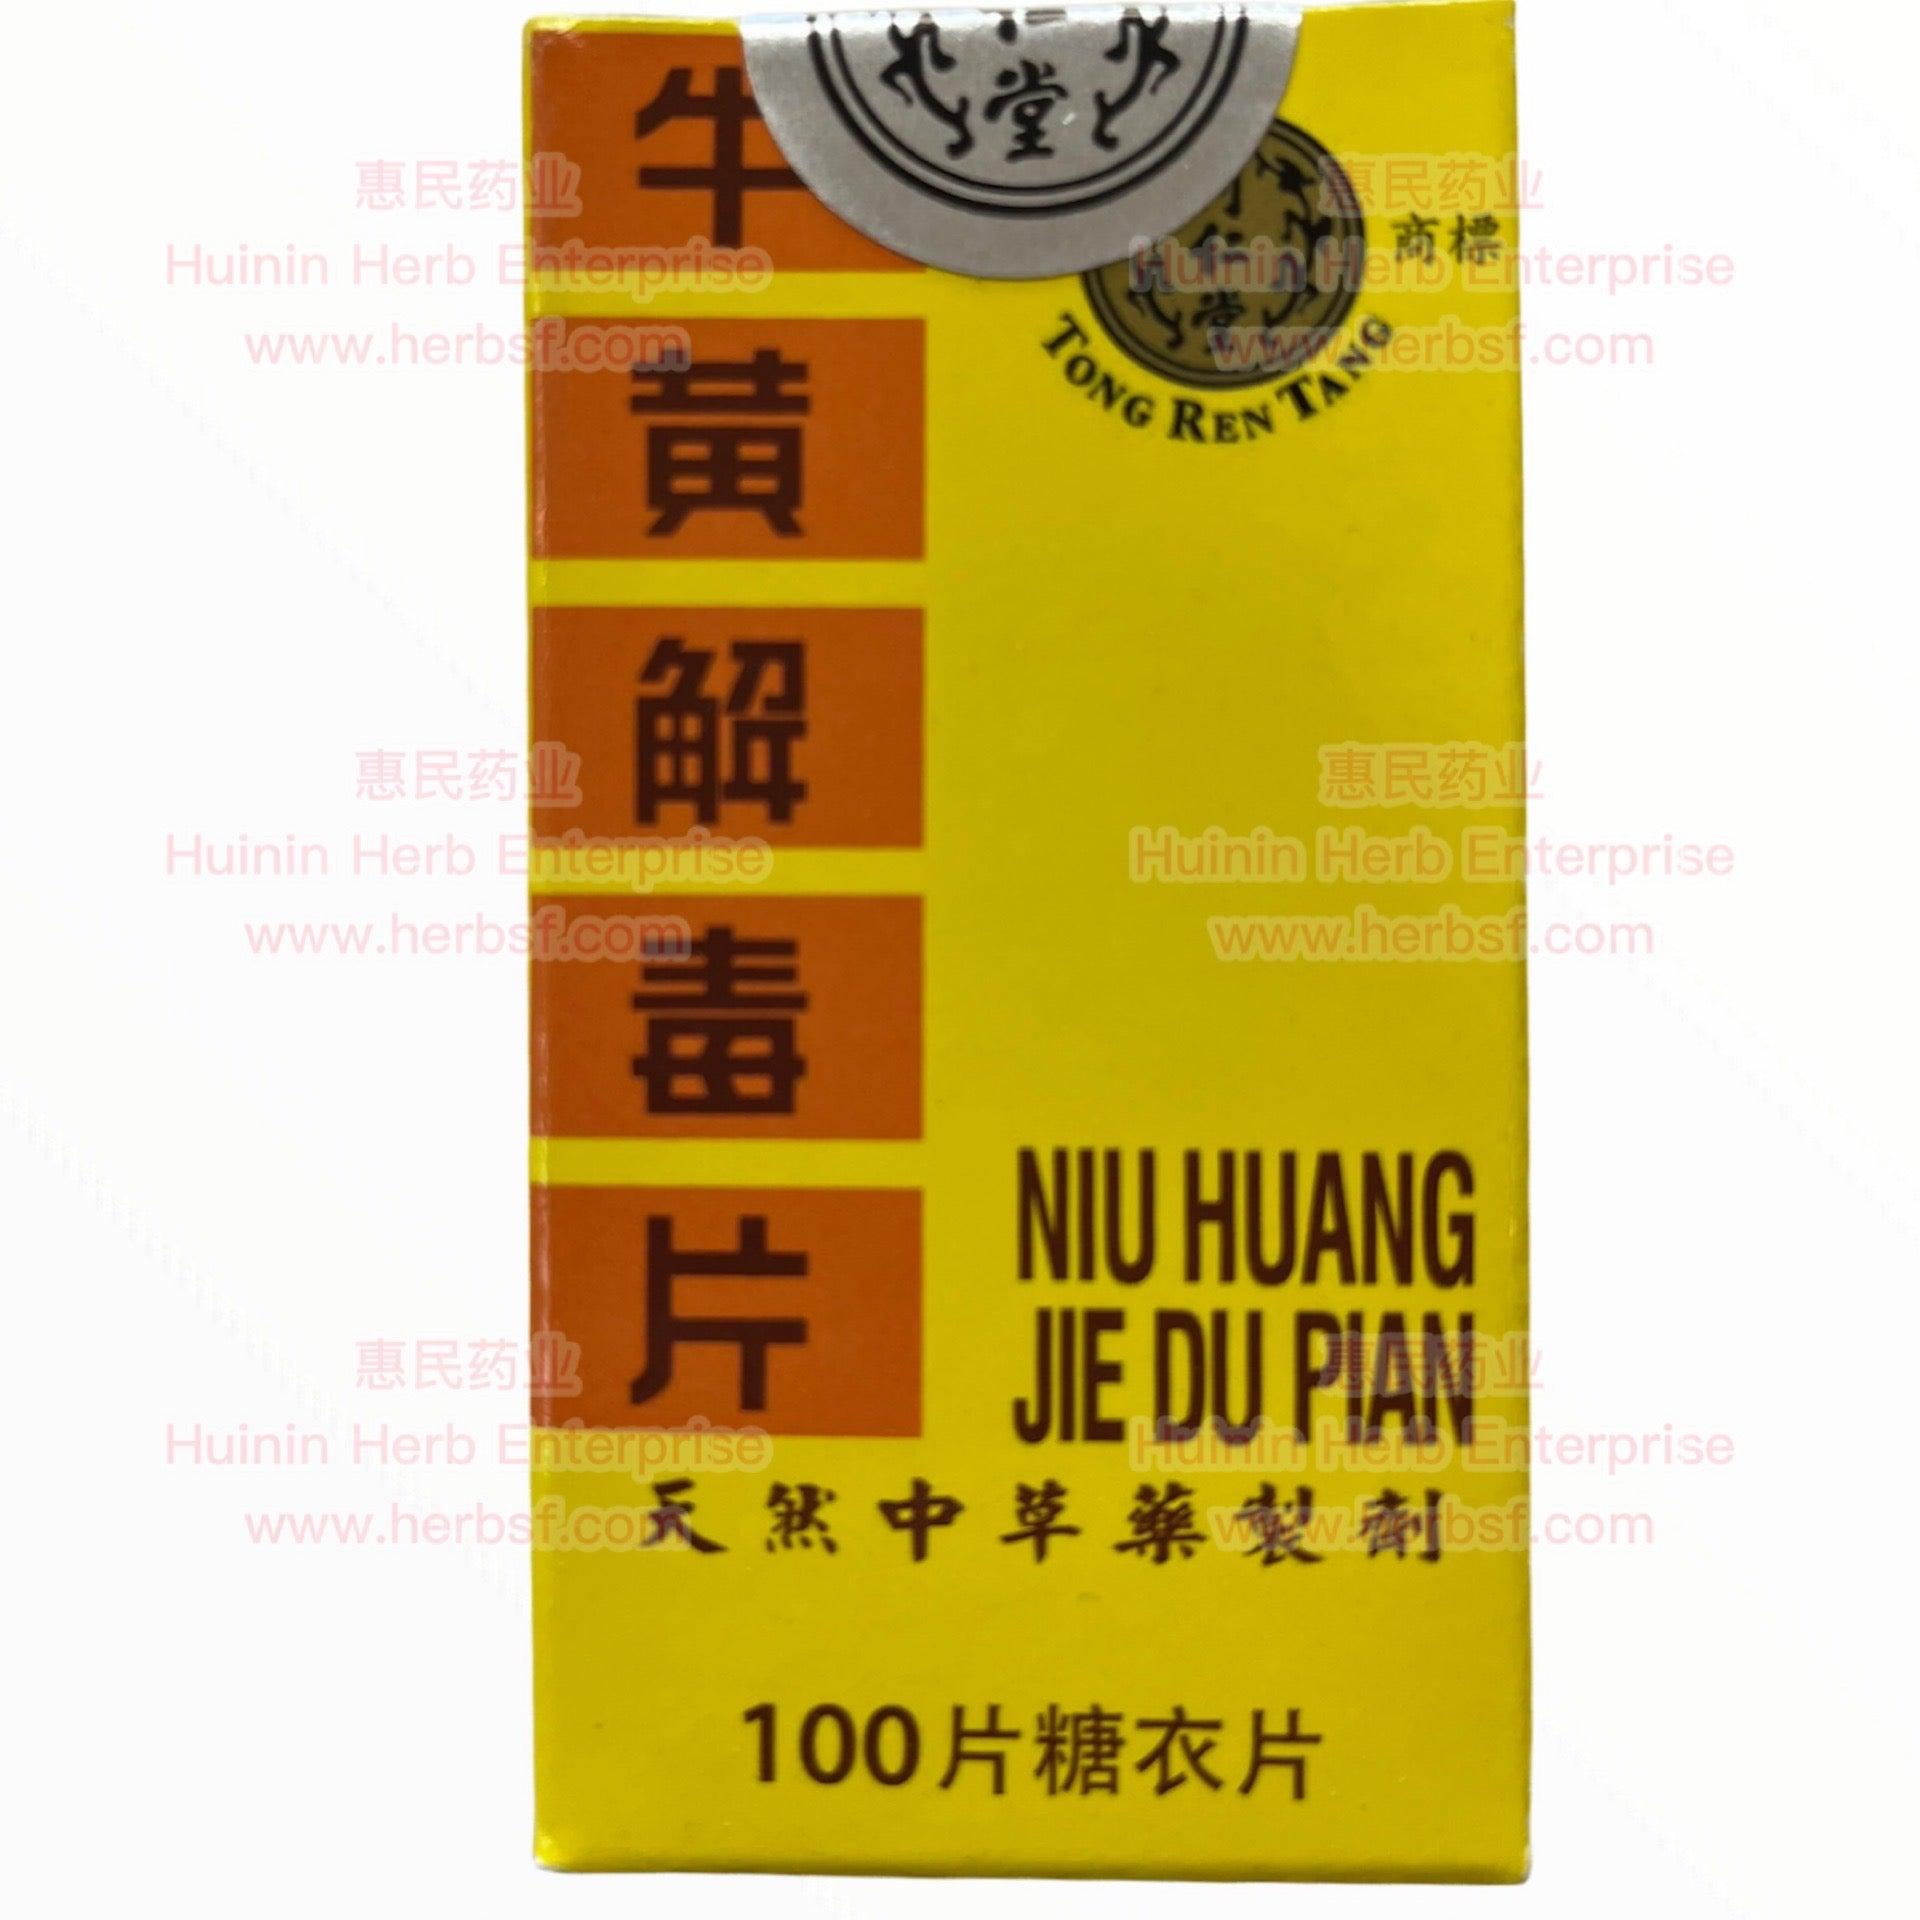 Niu Huang Jie Du Pian - Huimin Herb Online, LLC